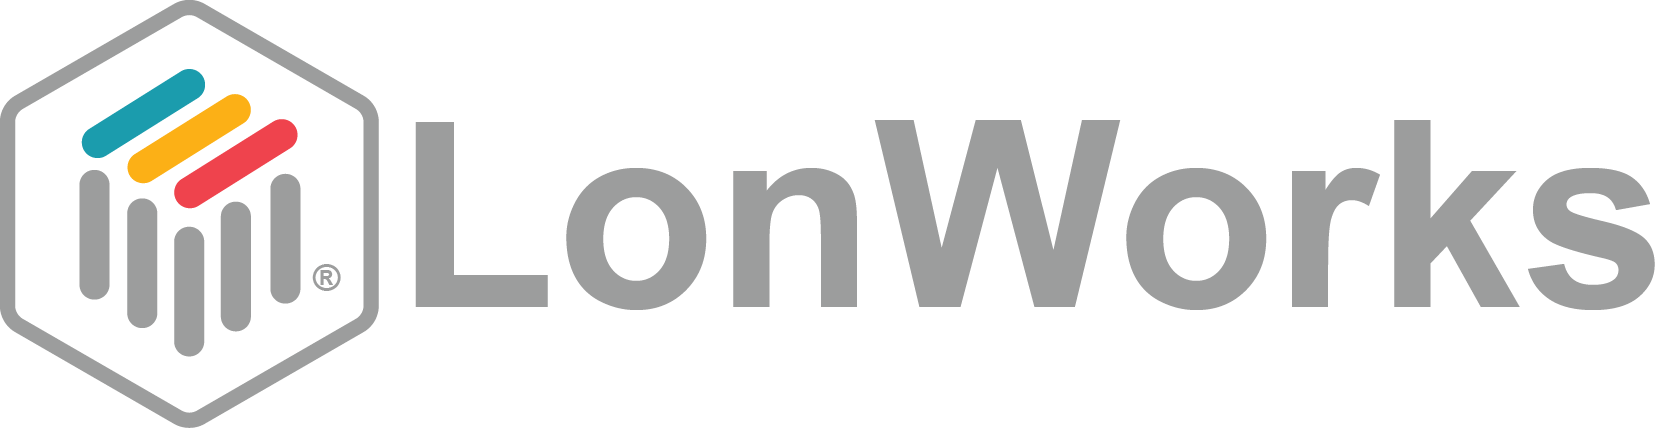 Bi System - protocollo LonWorks